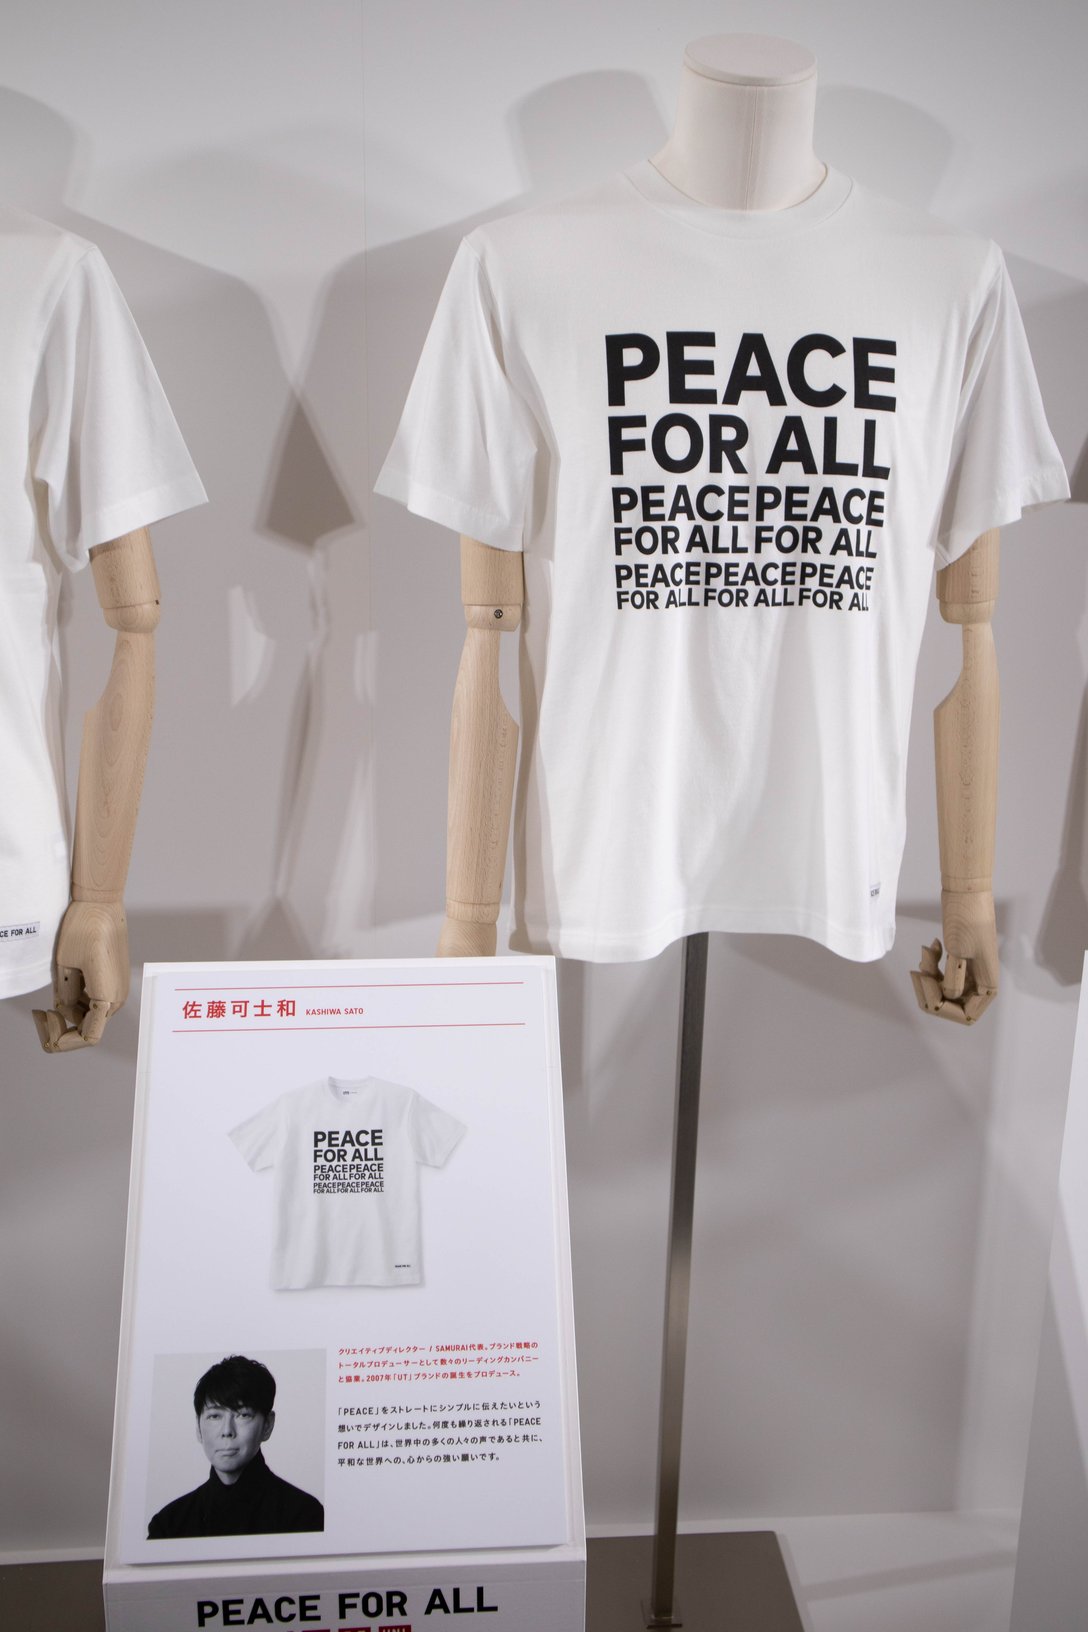 チャリティTシャツプロジェクト「PEACE FOR ALL」